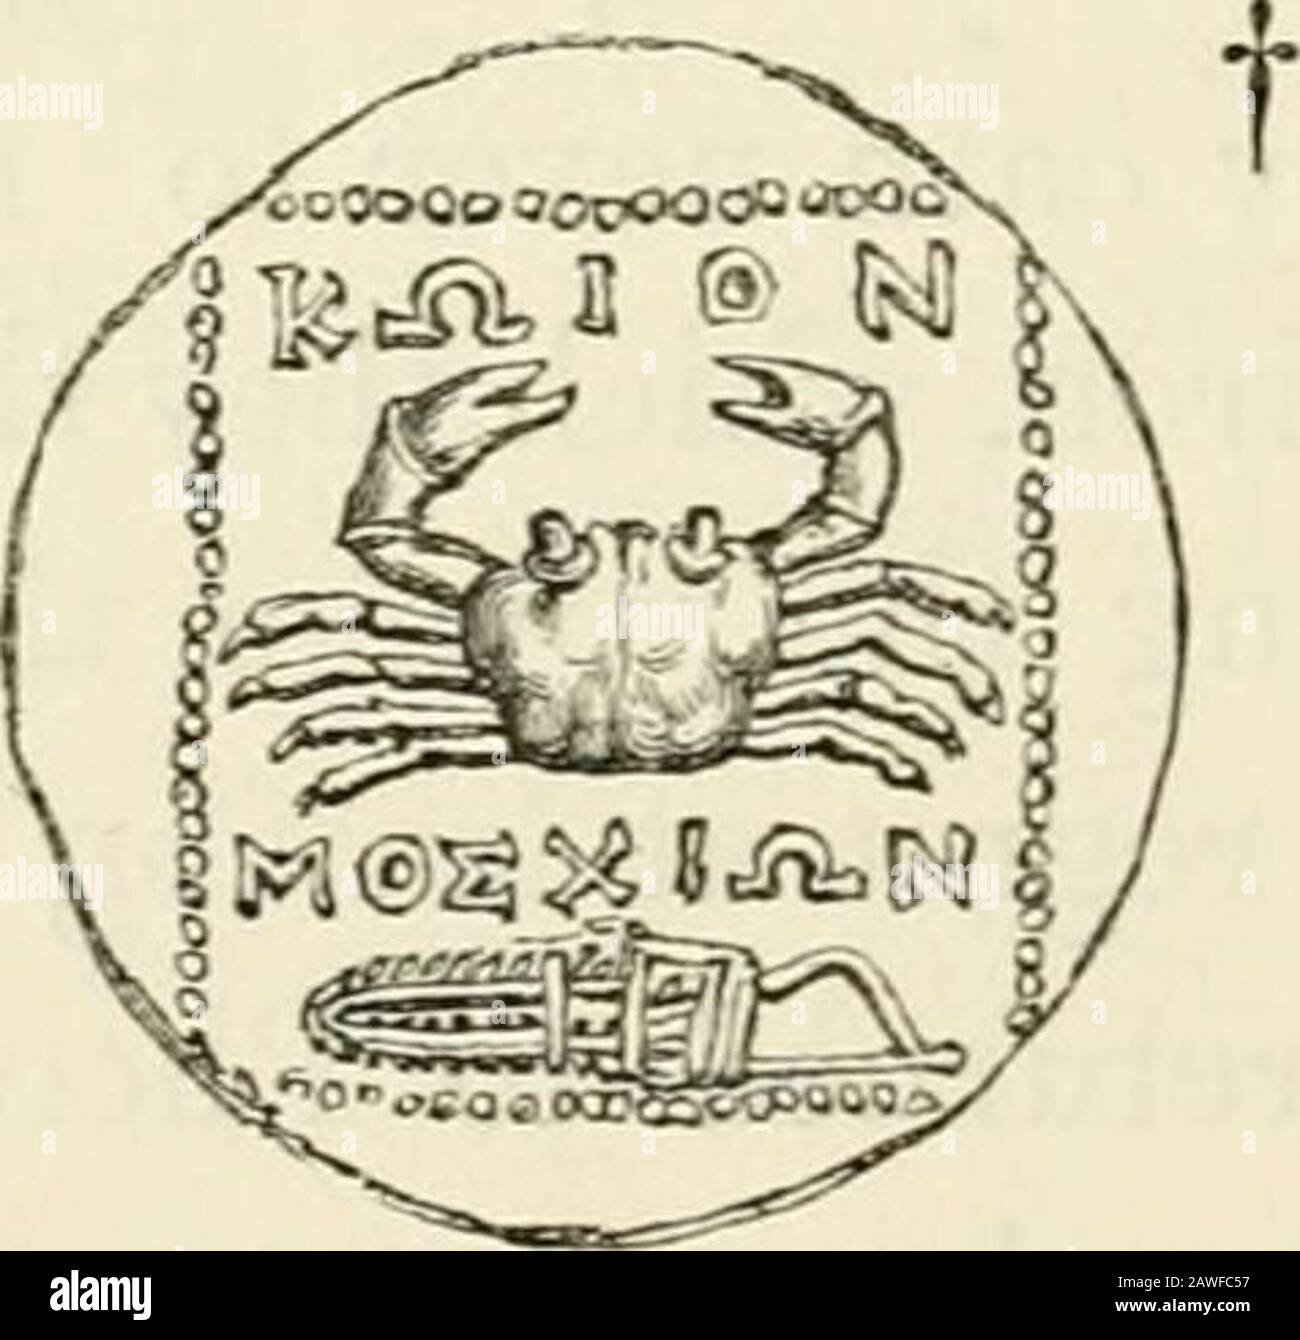 Das Museum der klassischen Antiquitäten: Es ist eine Reihe von Aufsätzen über die alte Kunst. Ocas folgten den Gründern; und Sistinus zeigt, dass dieser Fisch der Hundefisch ist, der in diesen Meeren vorkommt. Der Wolf soll von den Ägyptern als das Emblem des Verlaufs des Thesuns angesehen haben, und das Tier war auch Apollo oder der Sonne von den Griechen gewidmet. Macrobius sagt, dass das Jahr von den Griechen Xu/CajSaiTa, die Pier, sanft gekalkt wurde. Yaleriano leitet fromXw ab)(^w, was einen Wolf bedeutet. Der Buchstabe L tritt auf mehreren Medaillen auf und wurde von den älteren Numismatikern als Zahl mostliert, aber als theGre Stockfoto